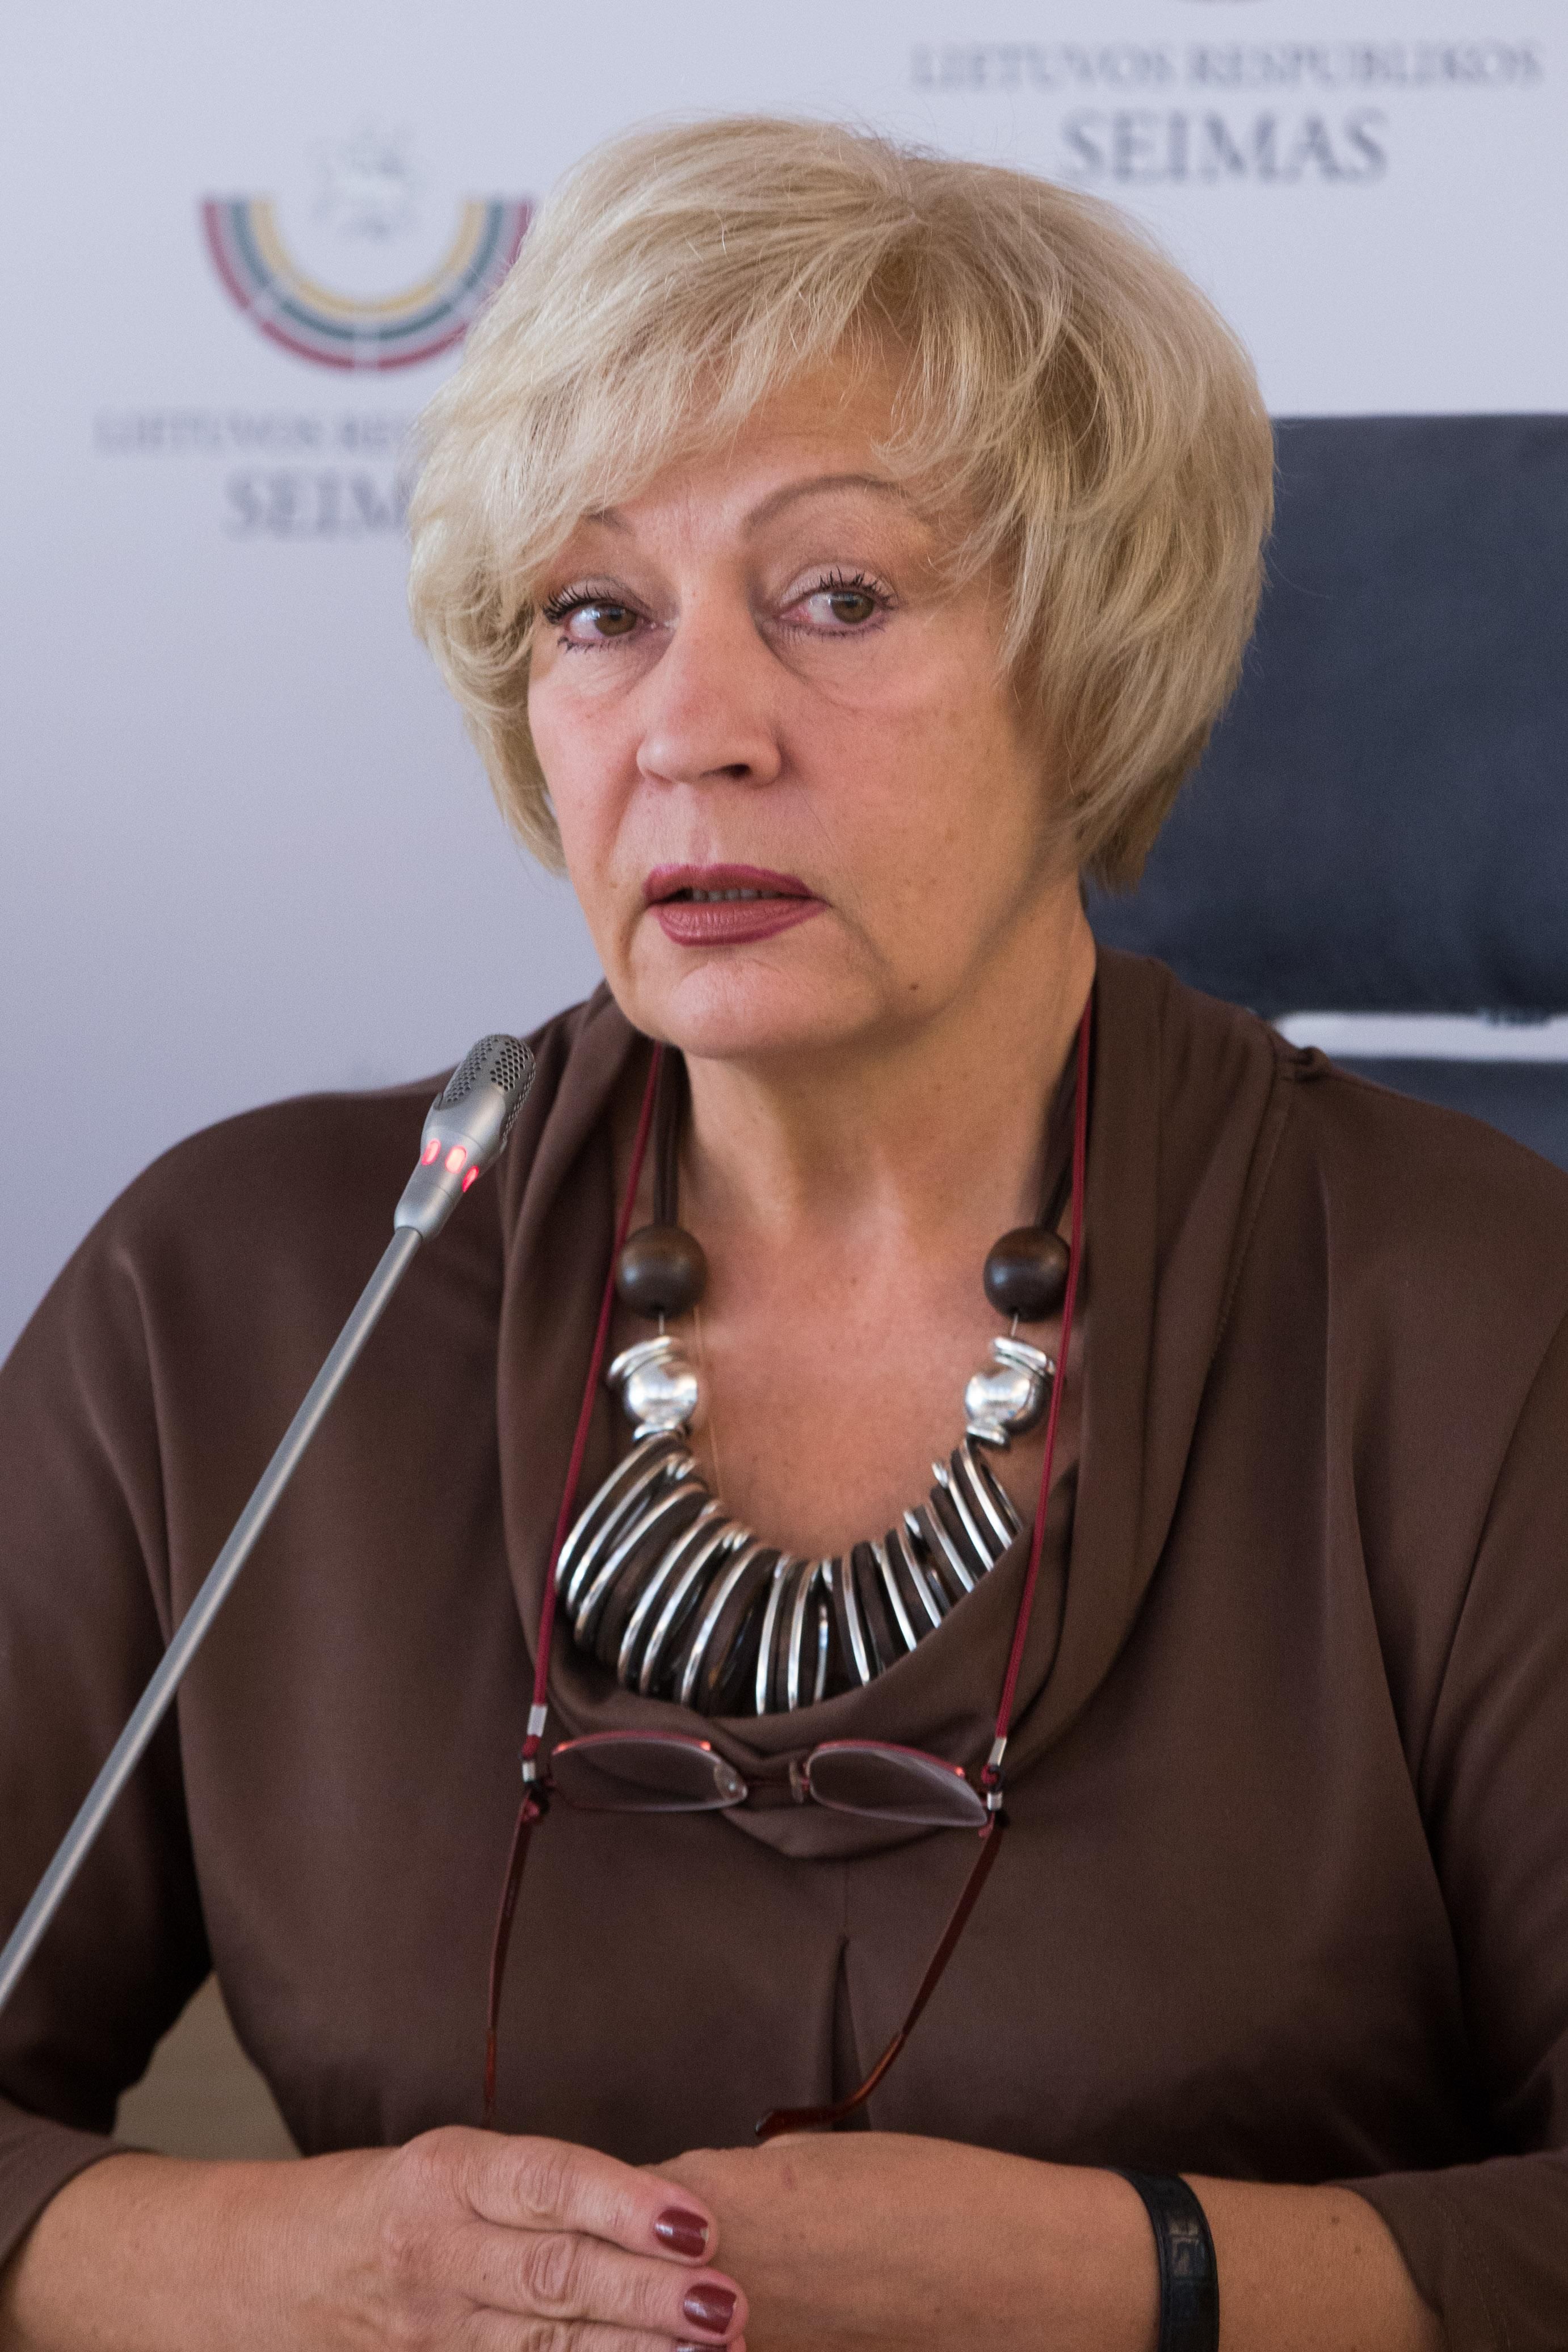 Лариса Дмитриева